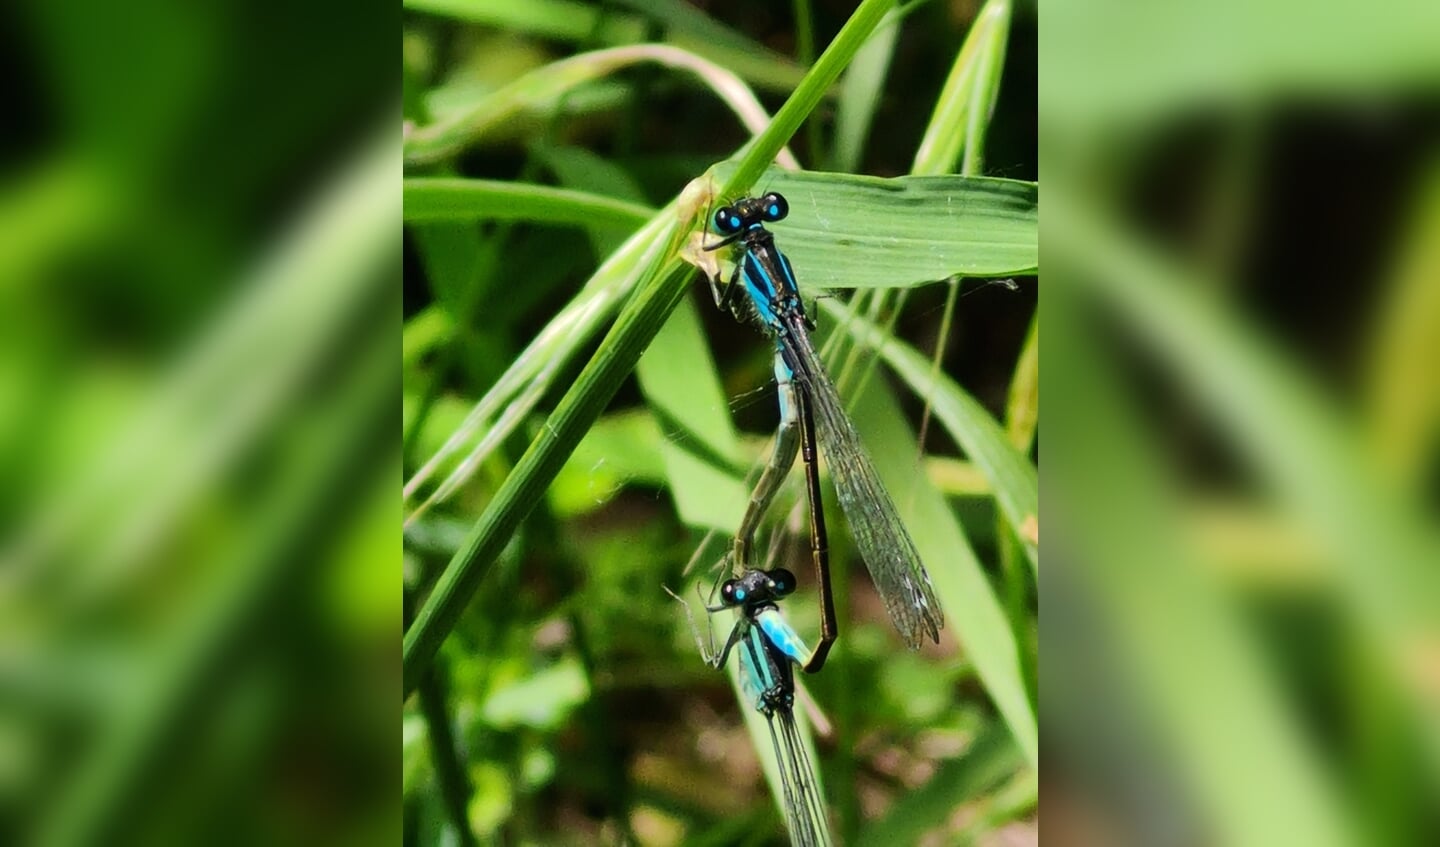 'Op een mooie zomerse middag (12 juni) hebben we samen genoten in het natuurpark Het Flevolandschap.
In het hele park zagen we overal heel veel mooie libelles vliegen: deze blauwe Lantaarntjes vond ik het mooist.'